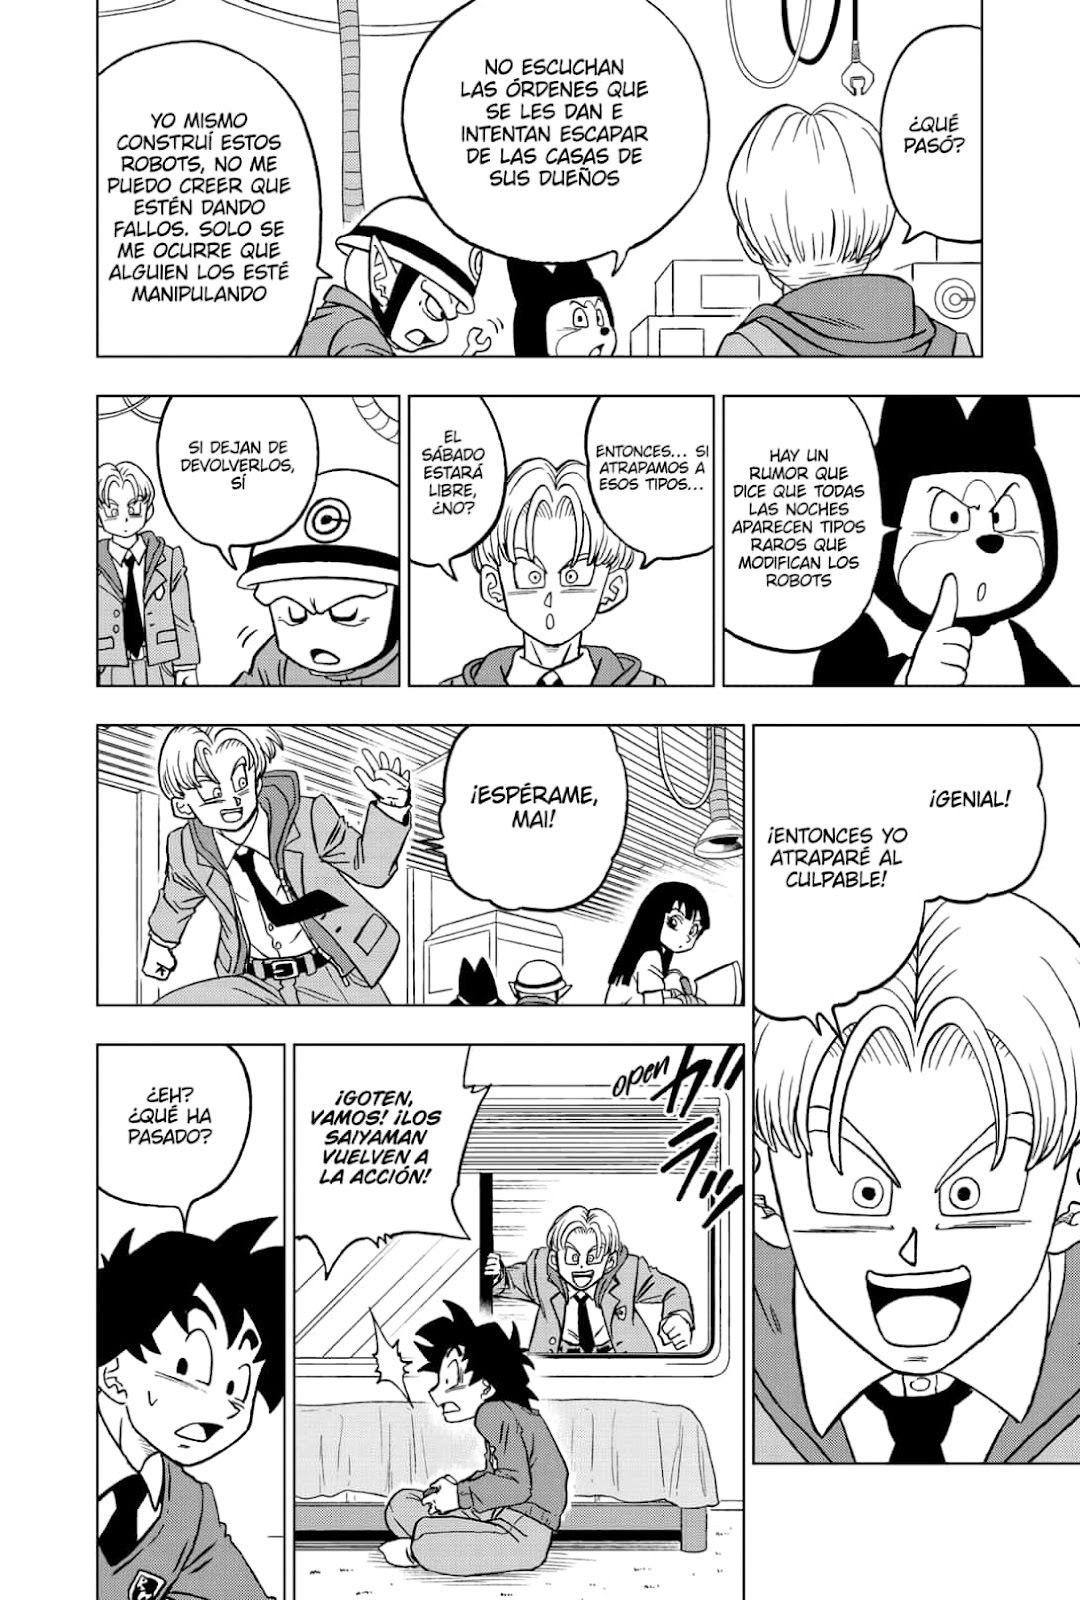 Dragon Ball Super manga 88 en español completo por manga plus: leer el  capítulo 88 de DBS ONLINE Y GRATIS, Animes